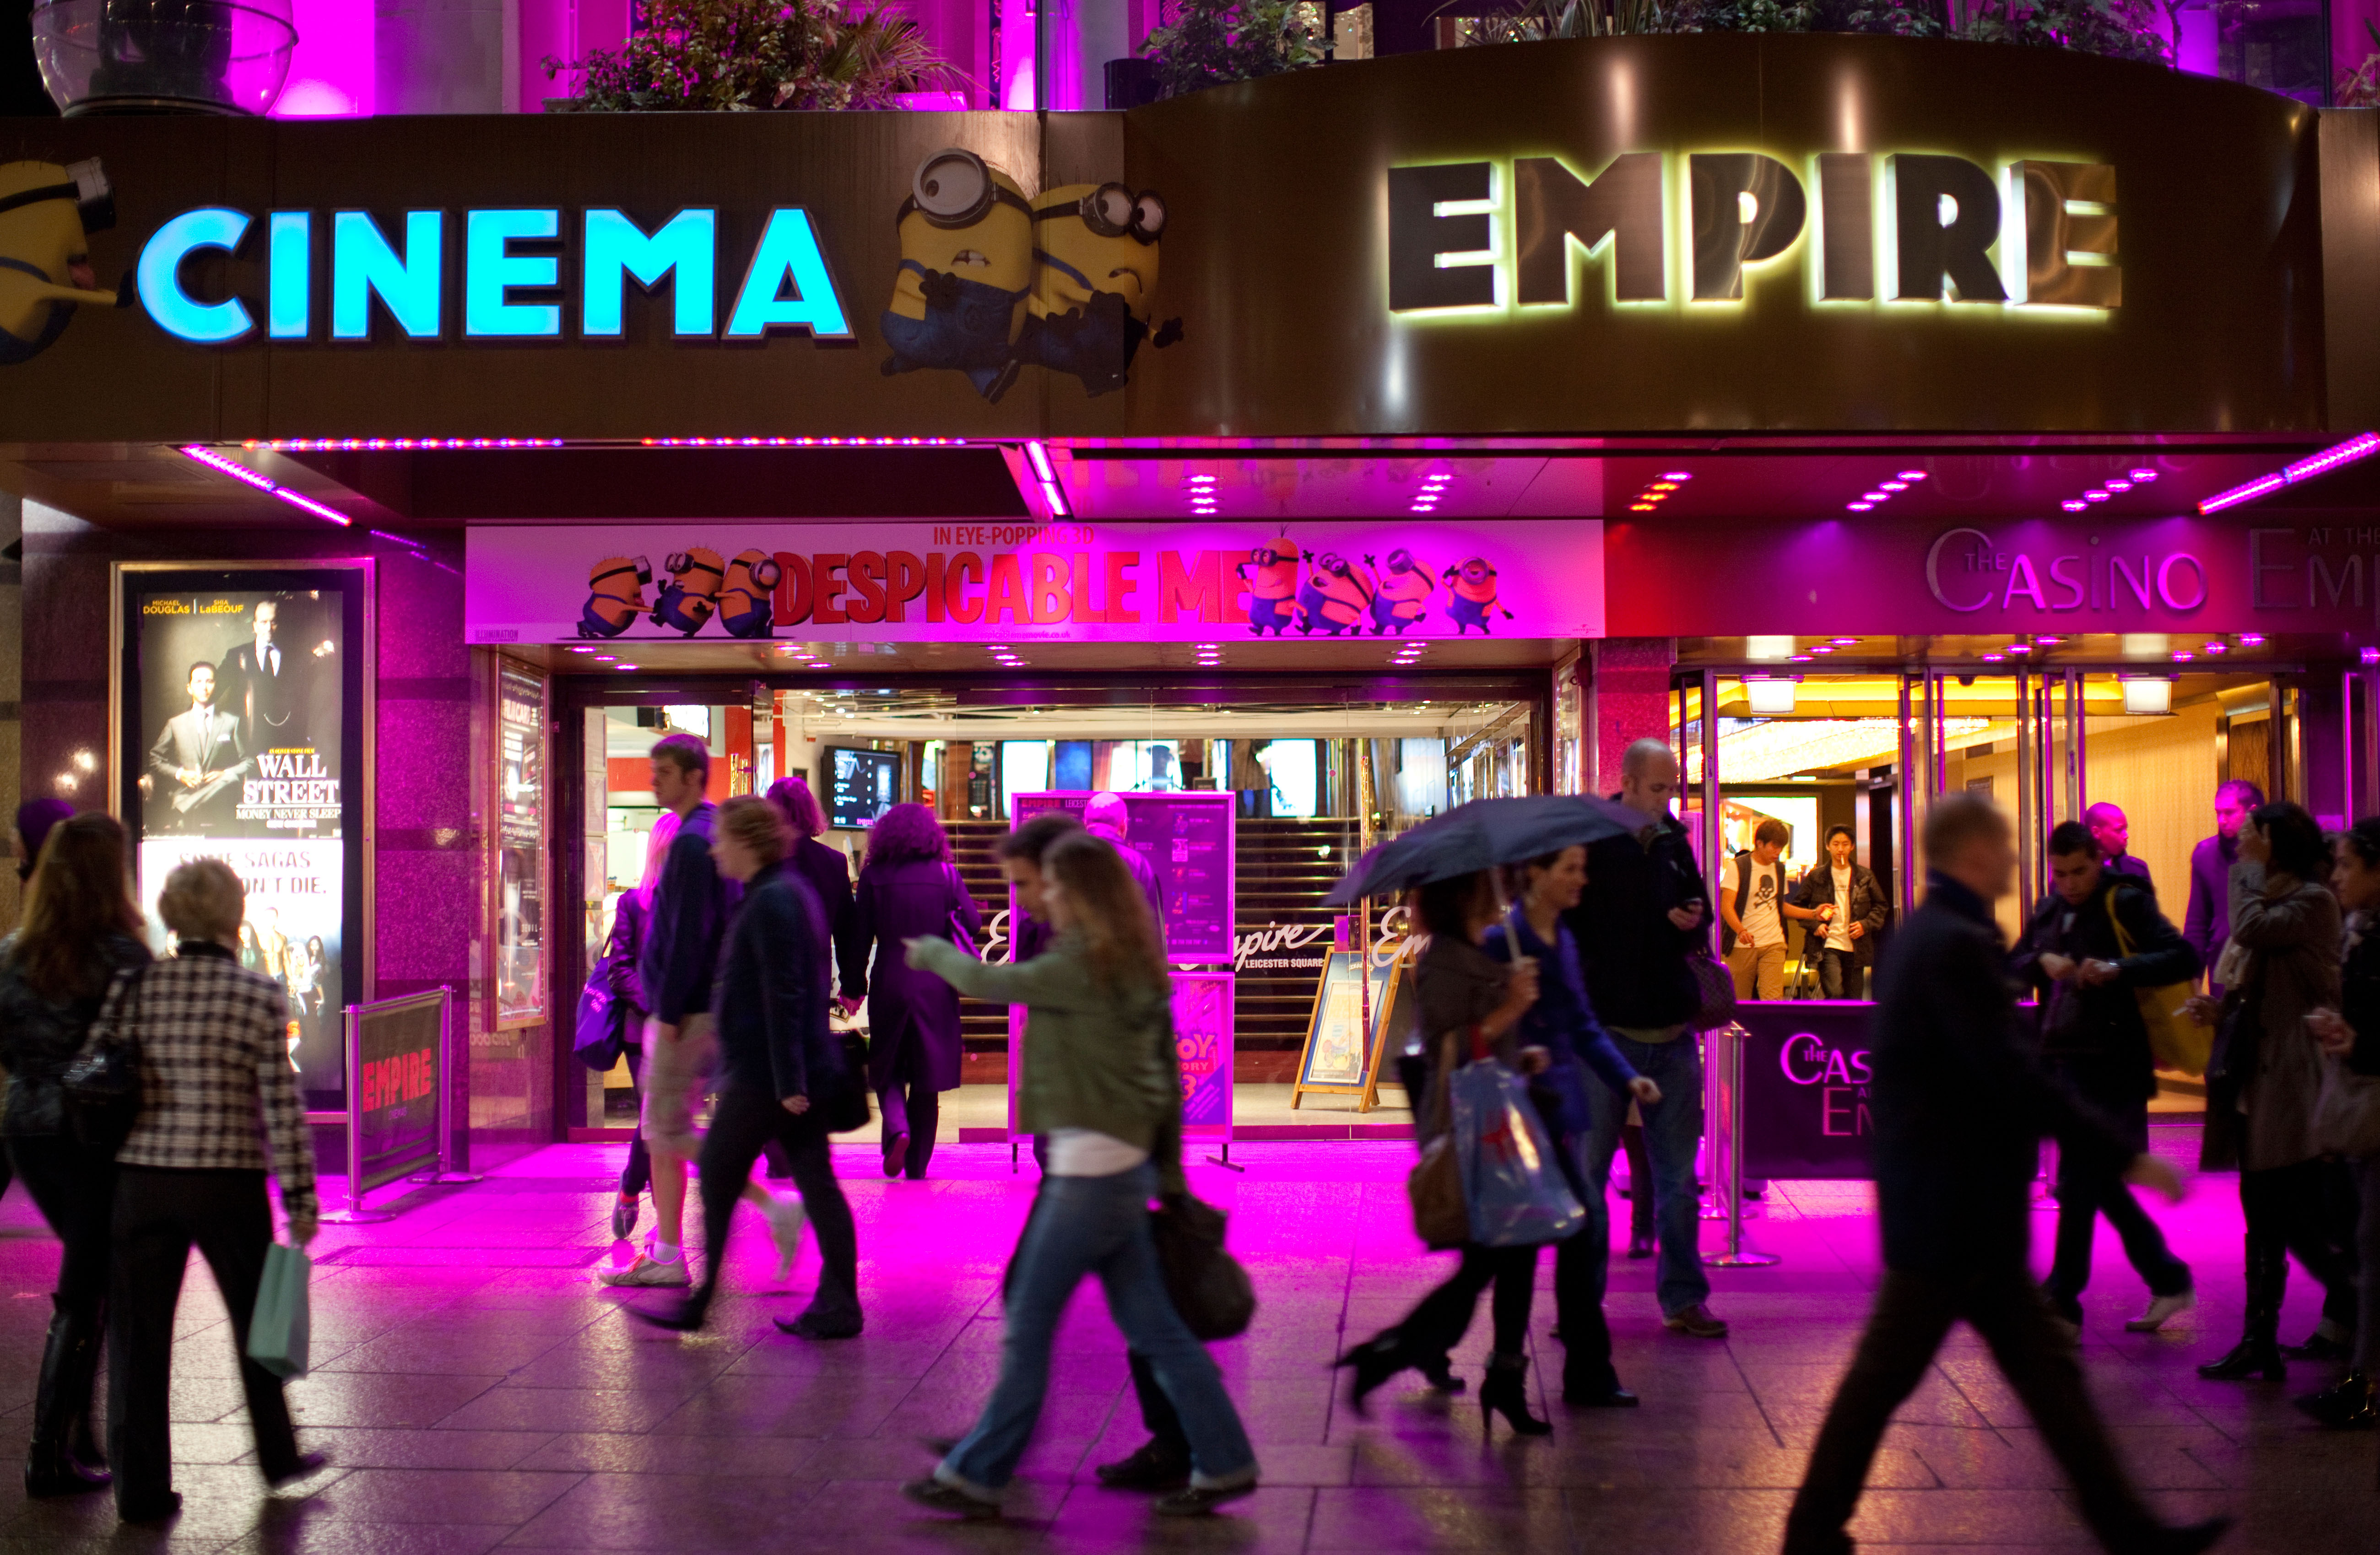 Empire Cinemas ist in die Insolvenz geraten, was zur sofortigen Schließung von sechs Kinos sowie zu 150 Entlassungen geführt hat